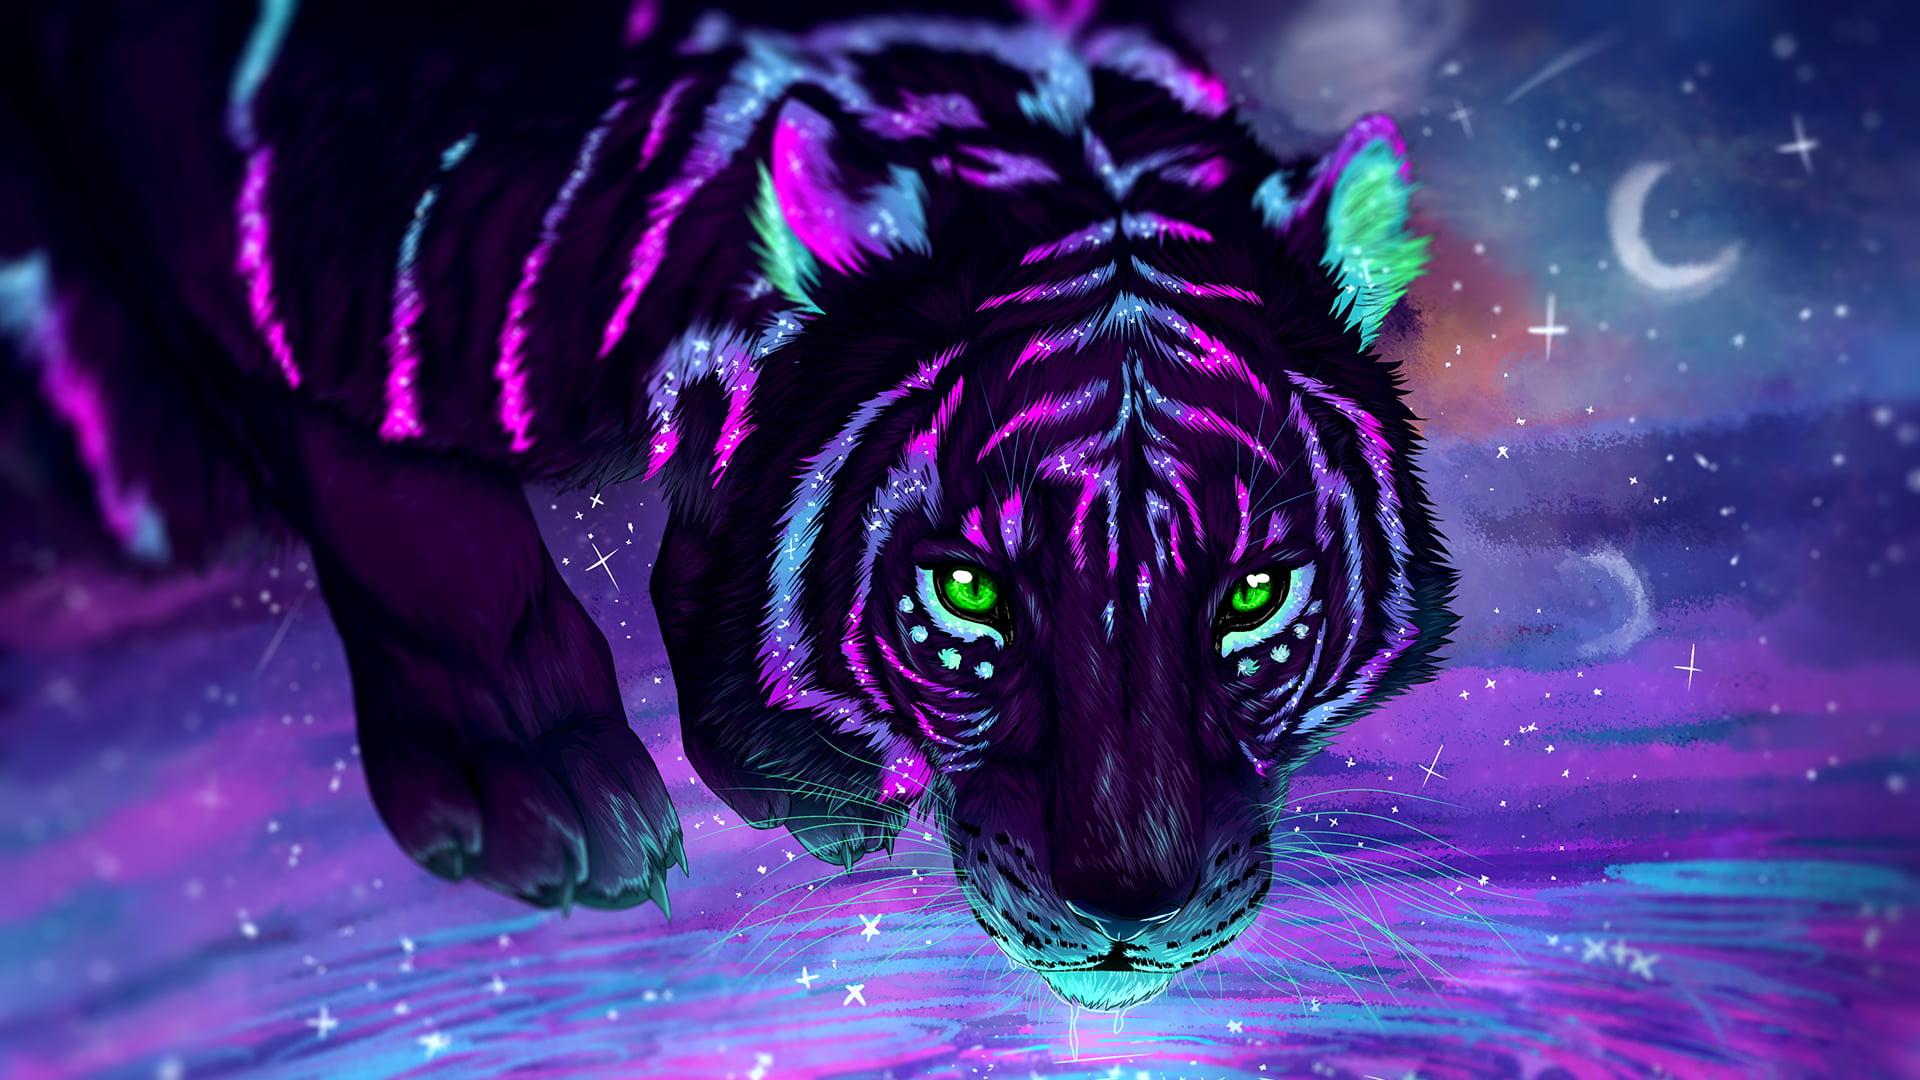 Black and purple tiger painting, digital art, tiger, stars, galaxy HD wallpaper